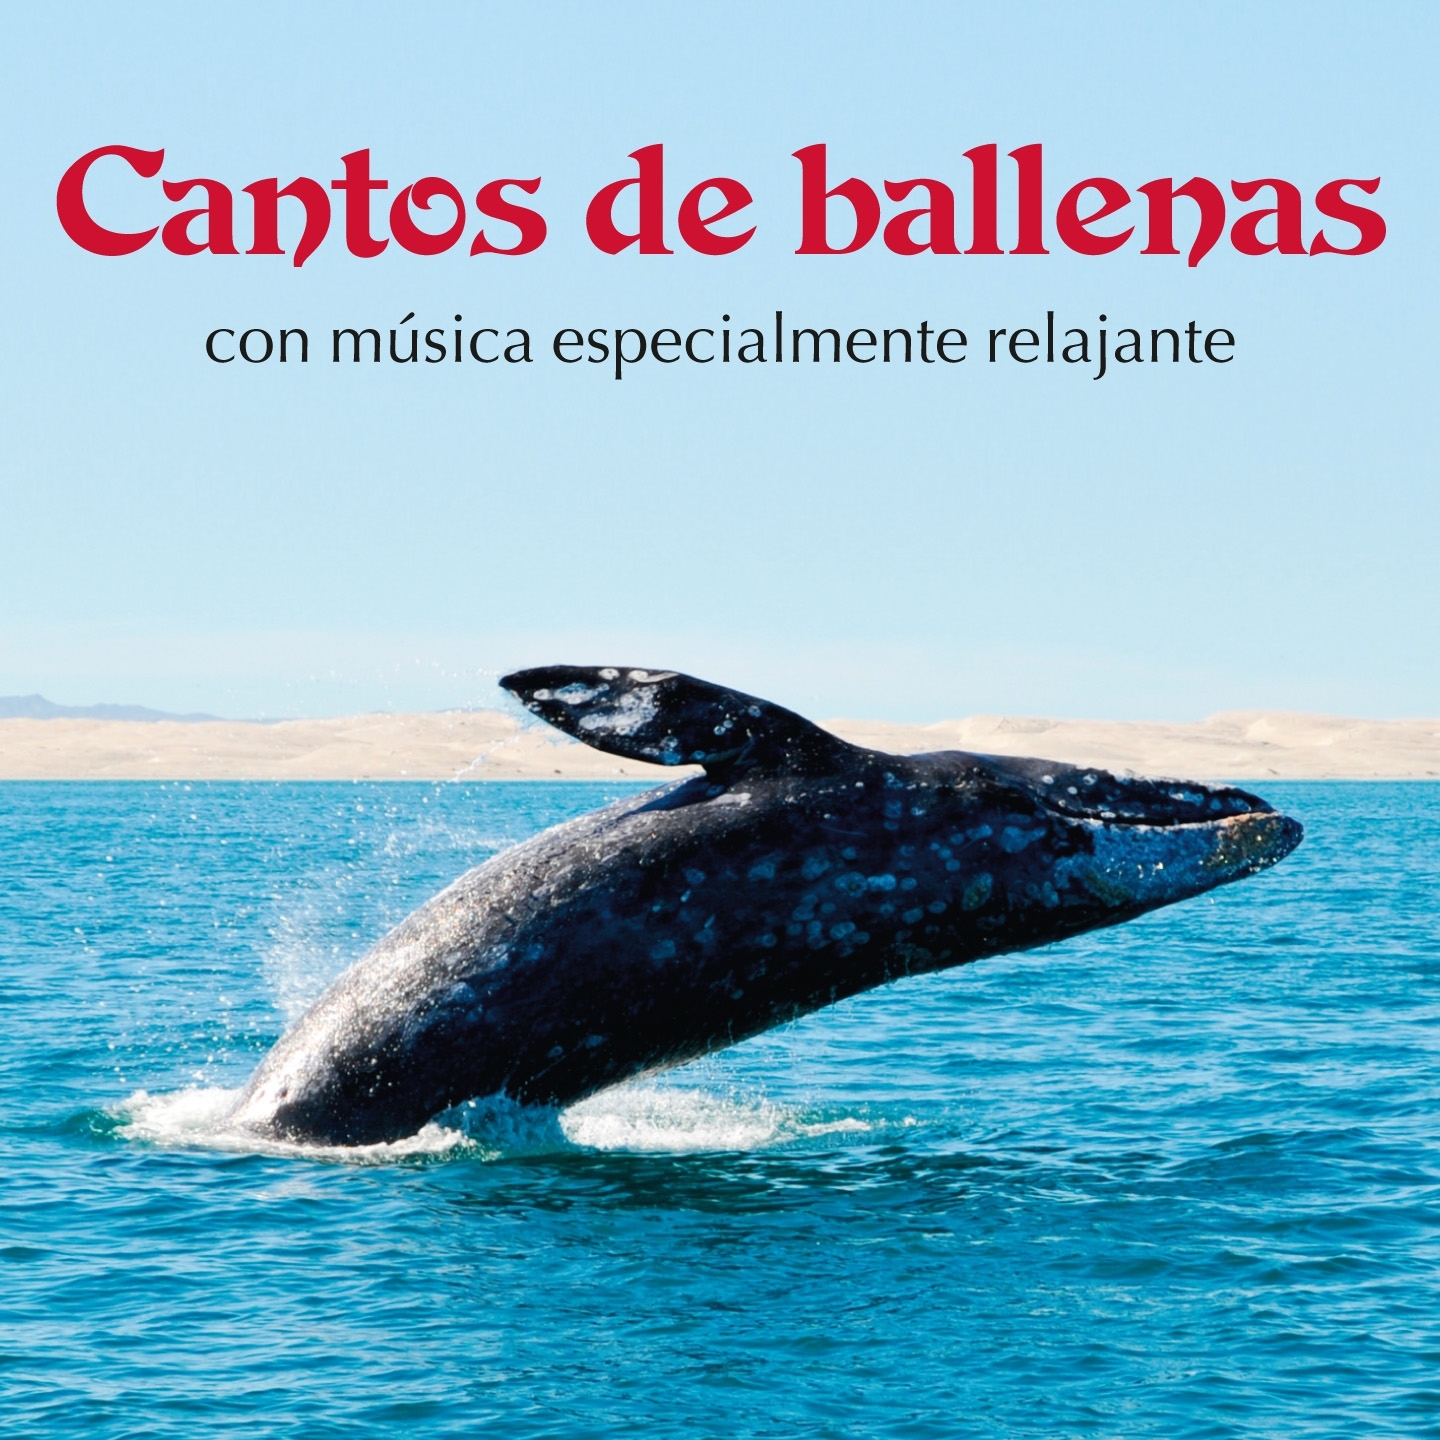 Canciones de las Ballenas Maravillosamente Paci ficas, Pt. 2